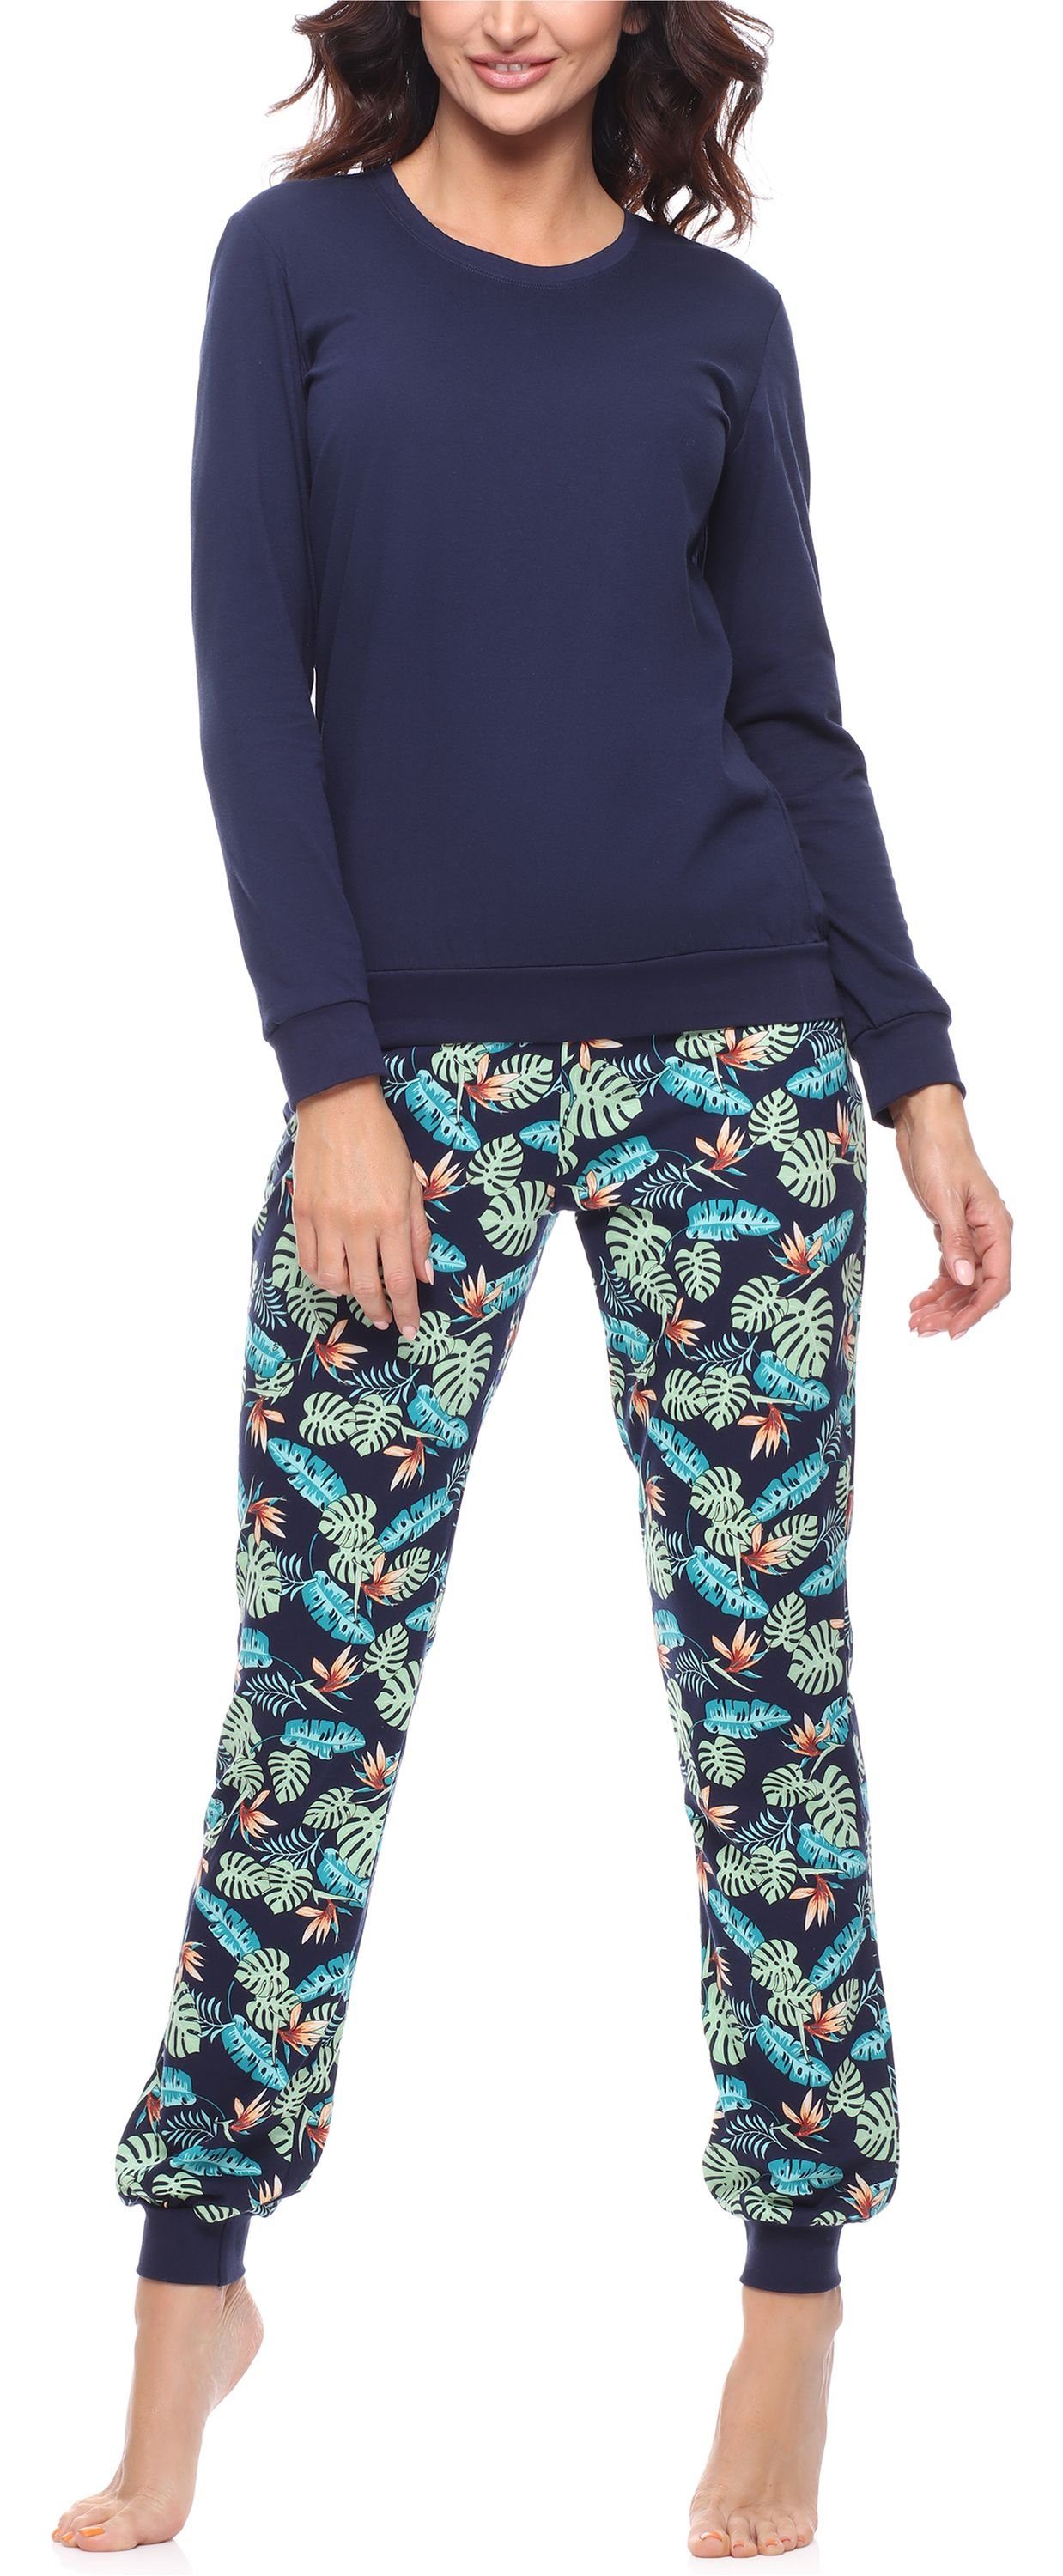 Merry Style Muster bunt Schlafanzug lang Damen MS10-268 mit Schlafanzug Marineblau/Blätter Zweiteiler Pyjama